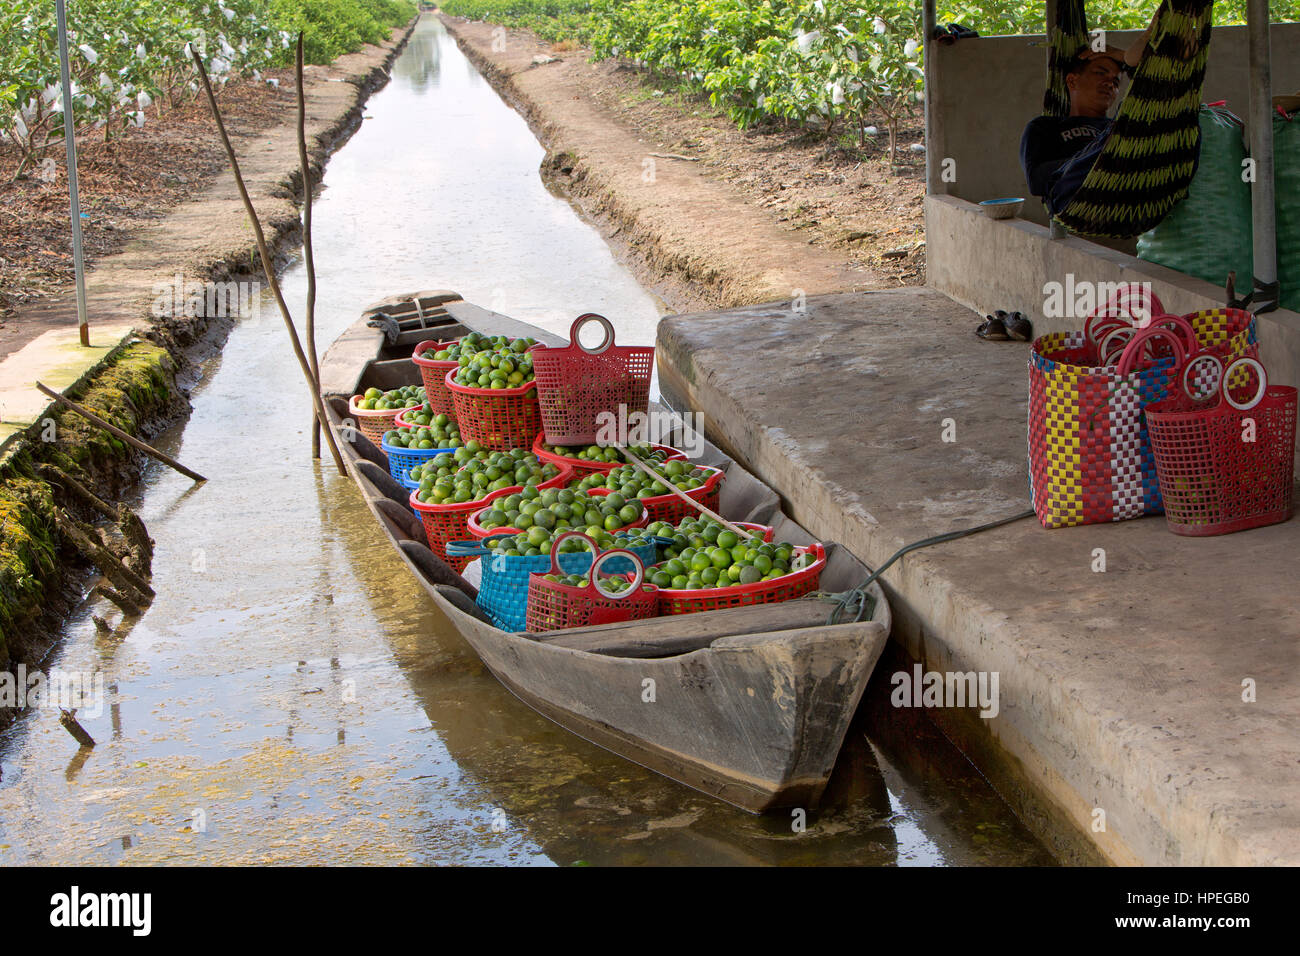 Kleines Boot 'dinghy" in der Landwirtschaft Canal, die geerntet Kernlose grüne LIMETTEN 'CITRUS AURANTIFOLIA" verankert, Guave Obstgarten mit verpackt Obst. Stockfoto